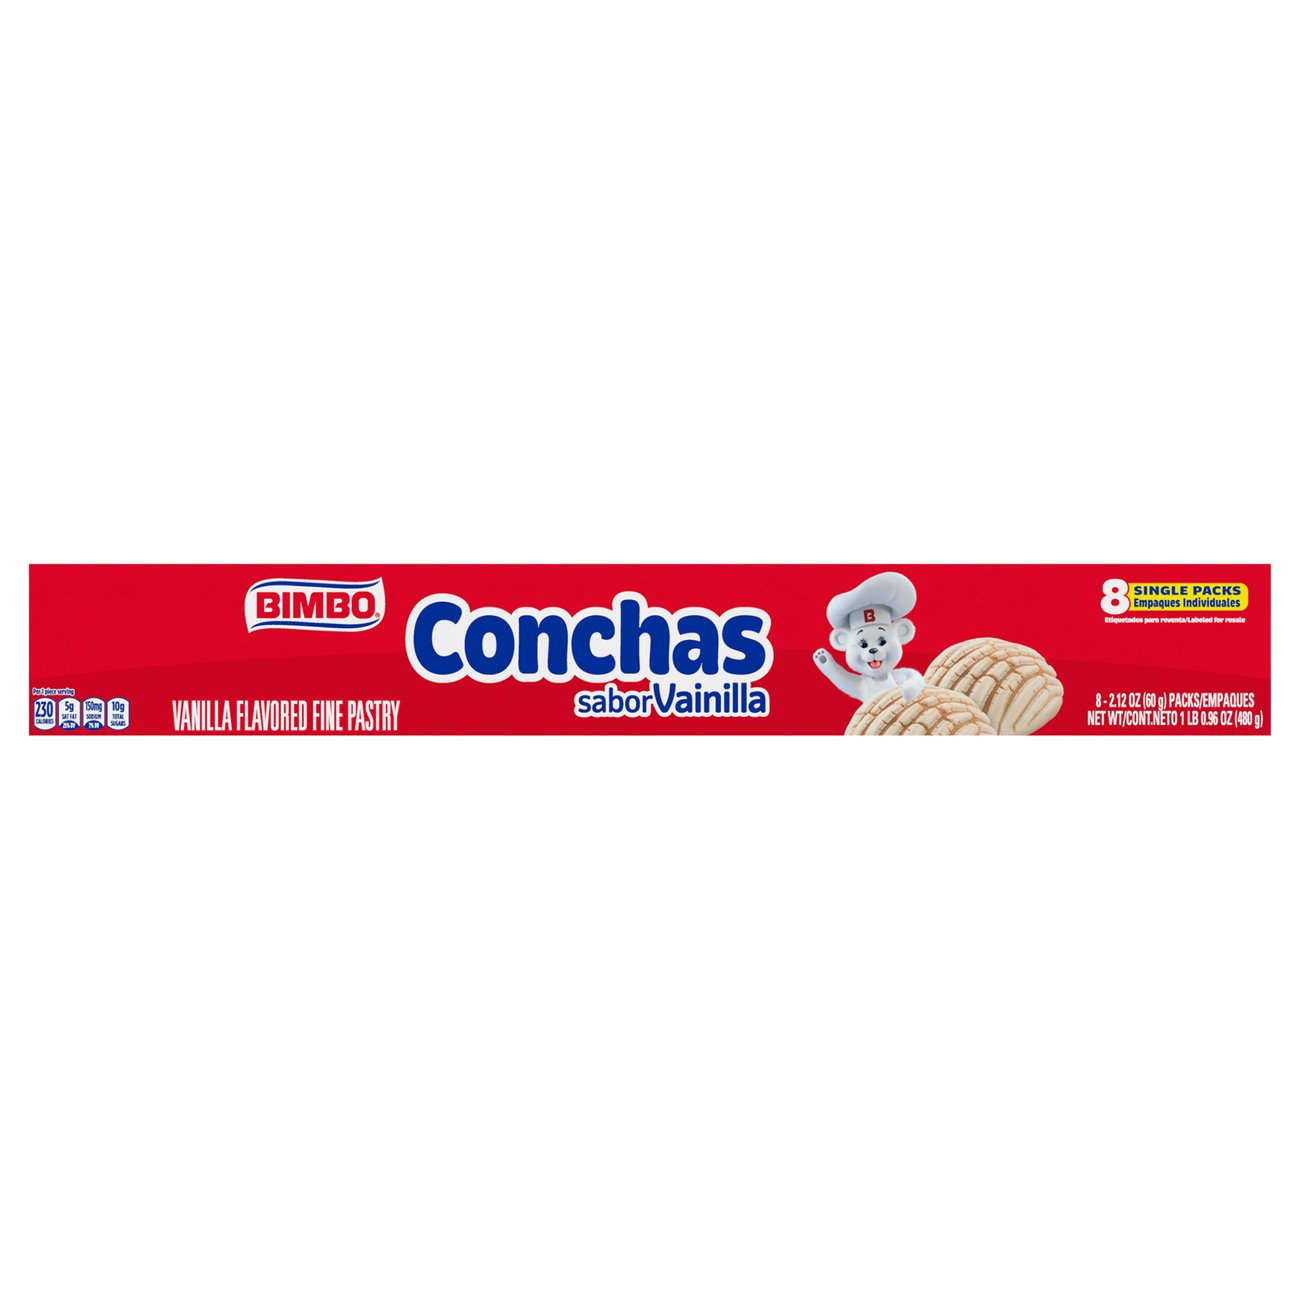 Miniature concha